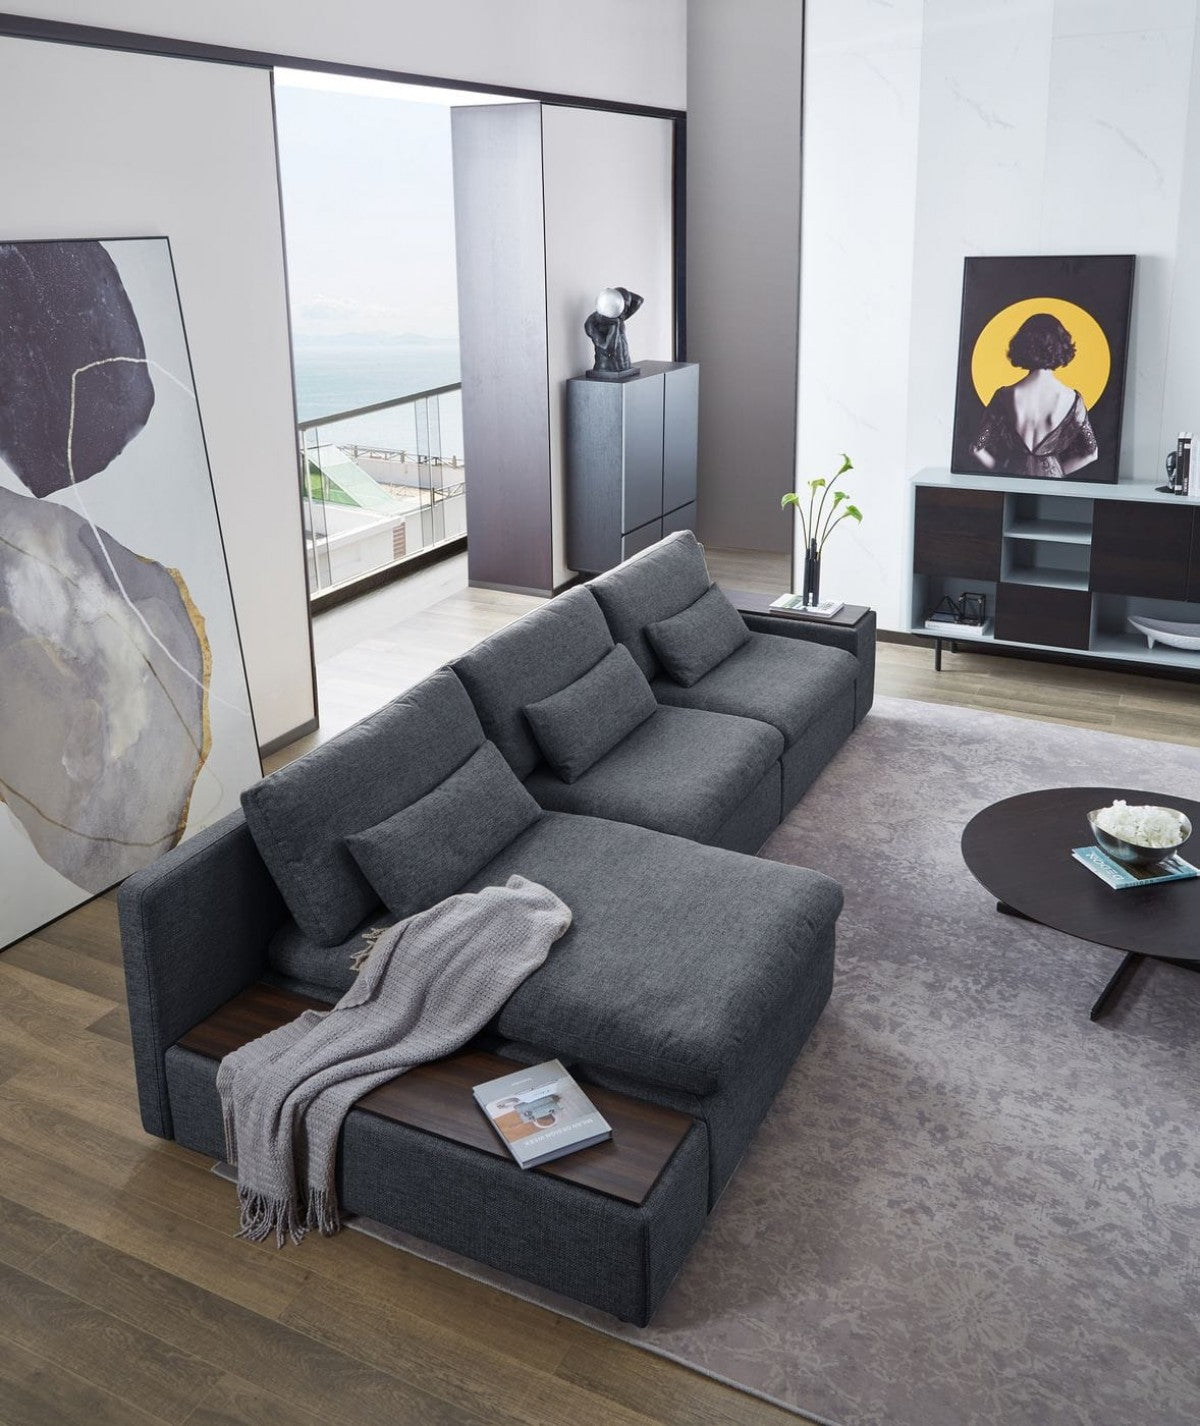 Divani Casa Paseo - Modern Grey Modular Sectional Sofa